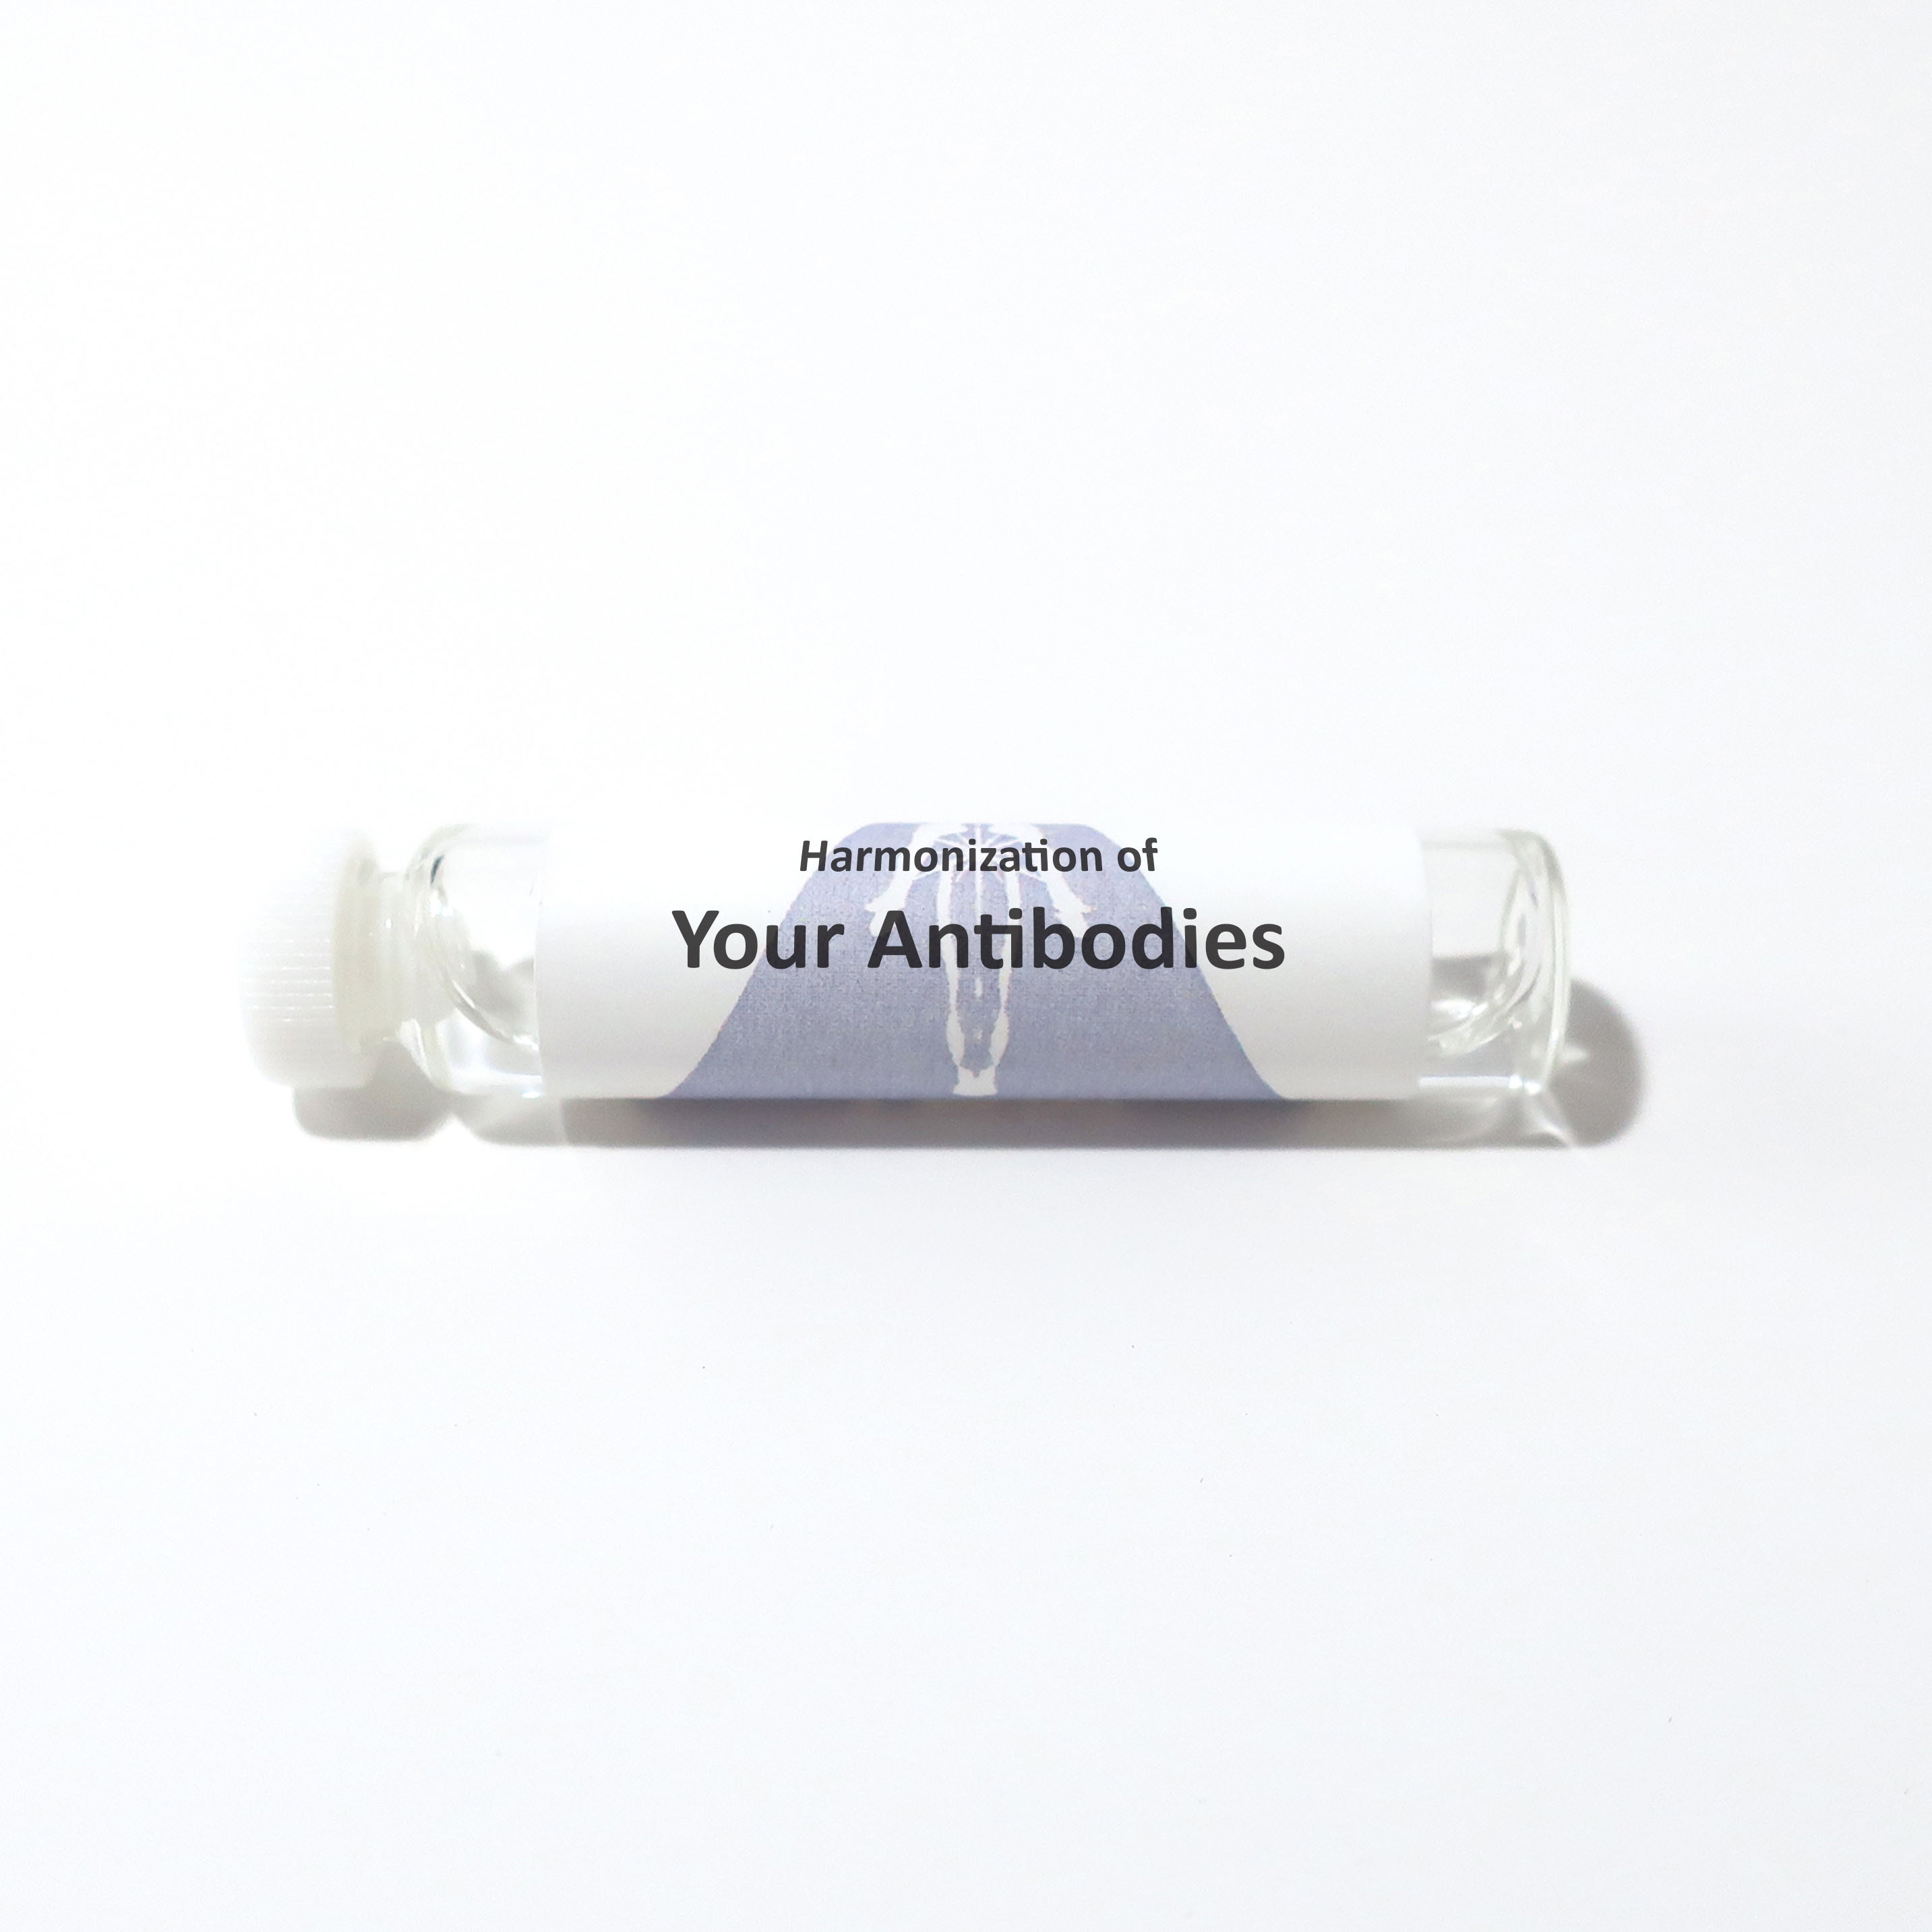 Your Antibodies